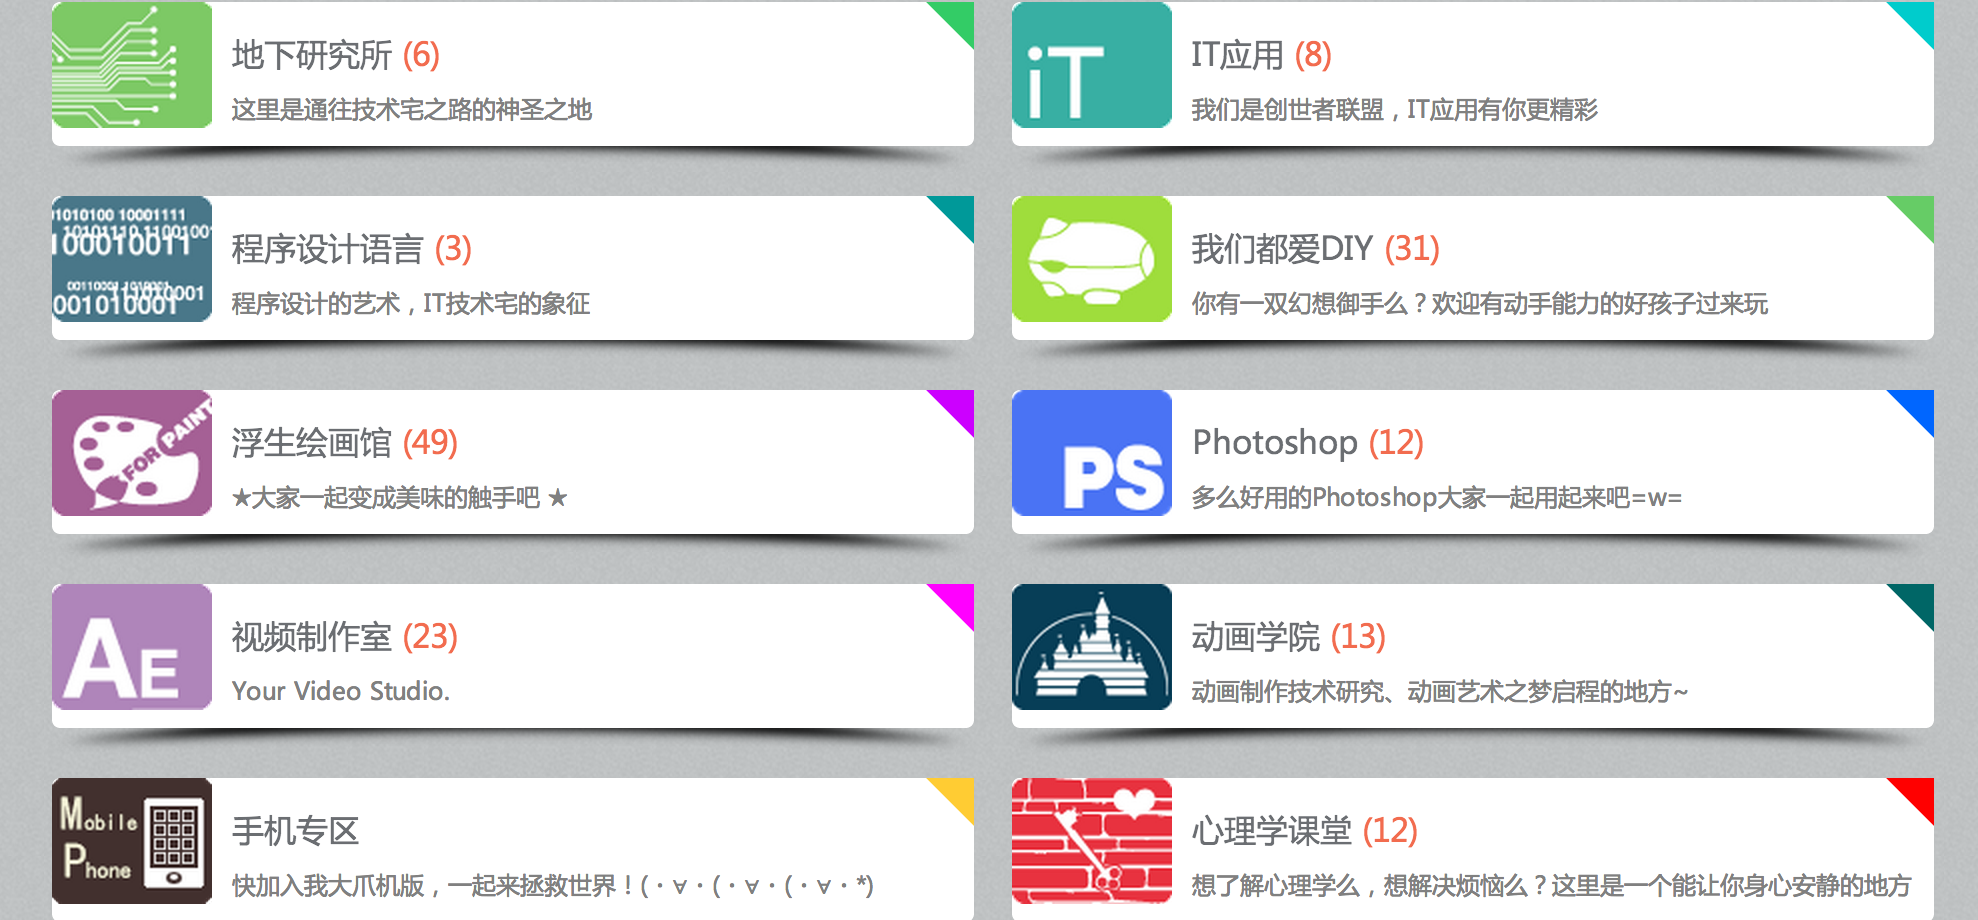 Screen Shot 2014-01-10 at 下午6.45.09.png